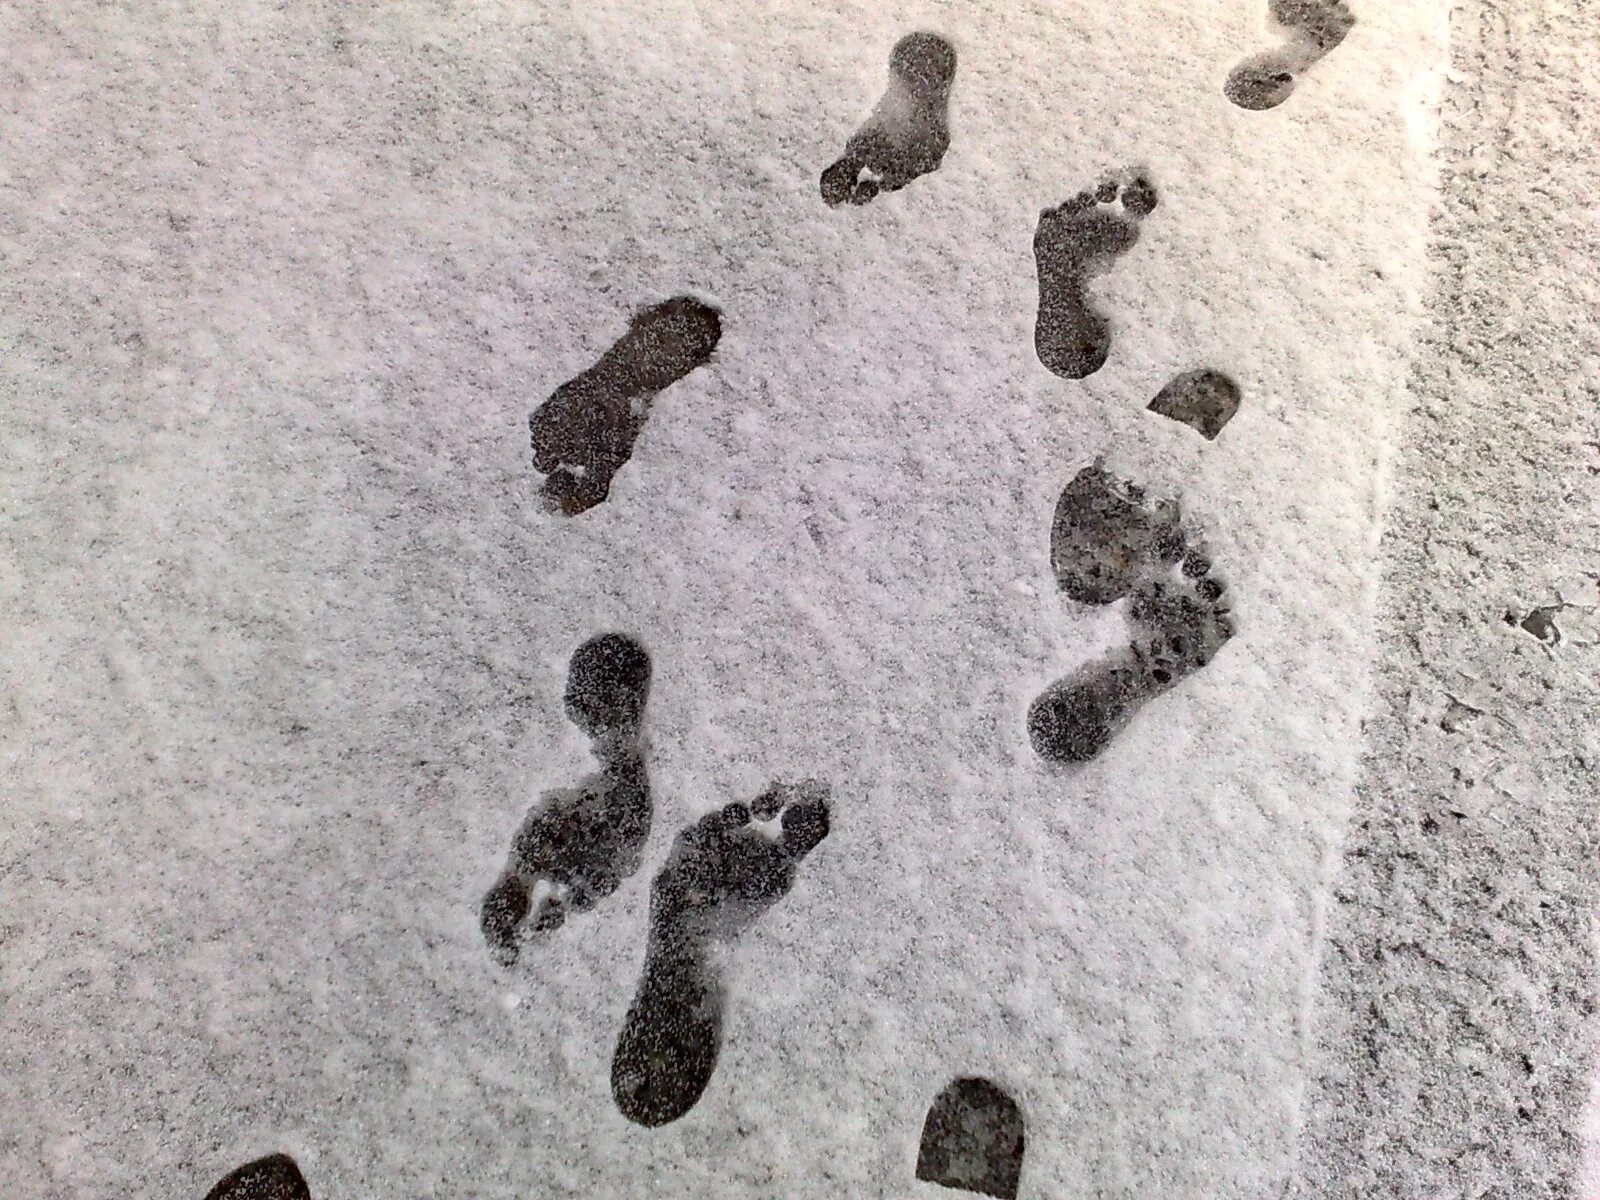 Шаров след в след. Следы человека на снегу. Следы босых ног. Отпечатки ног на снегу. След ноги человека на снегу.